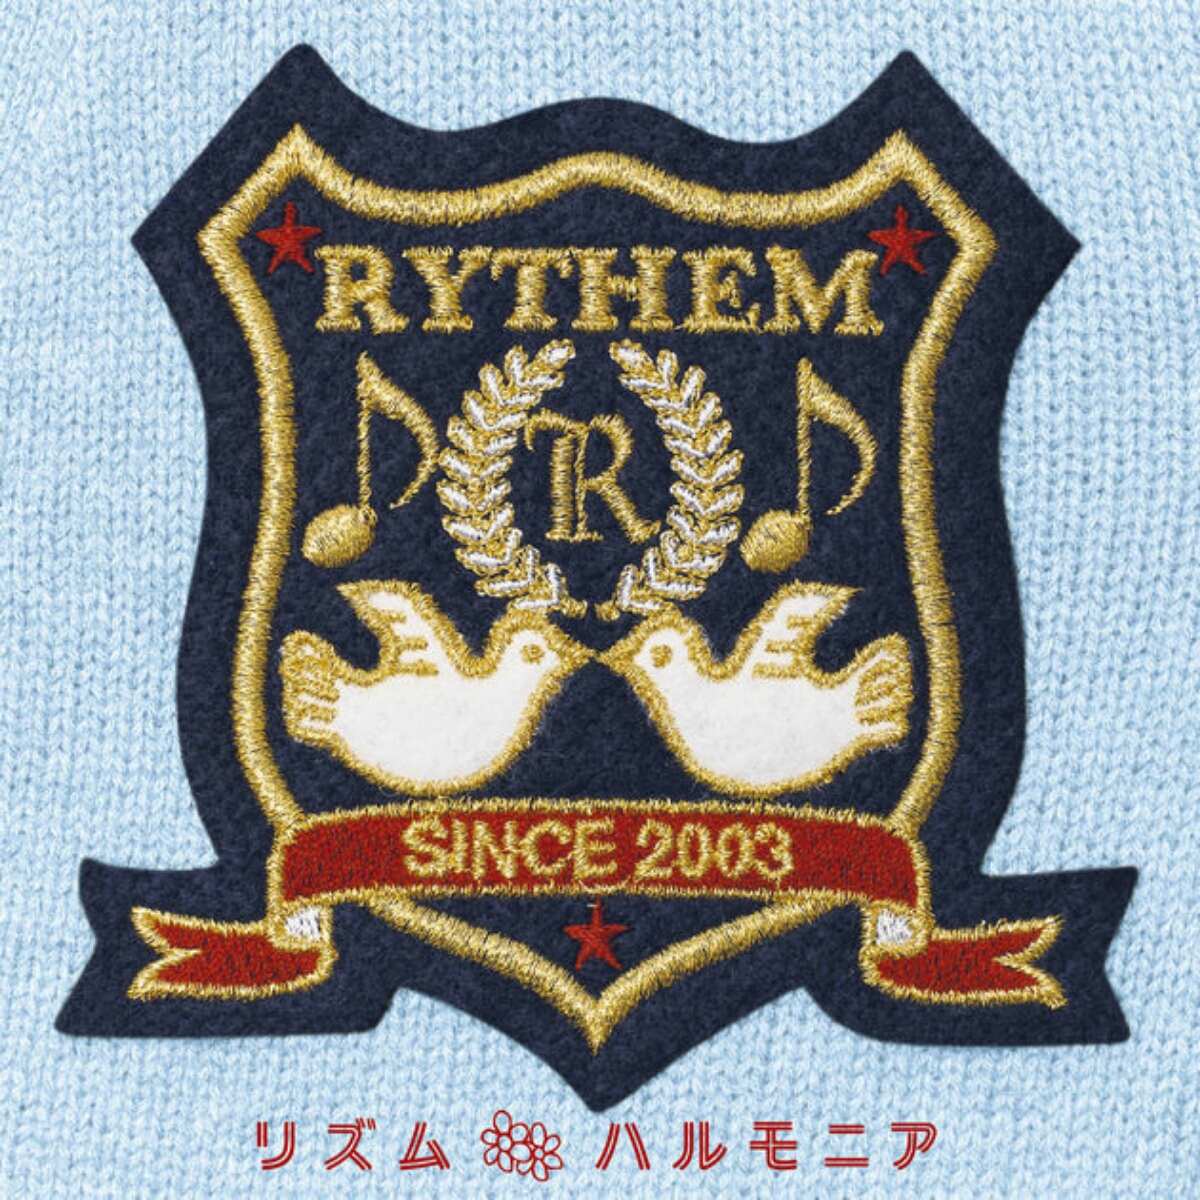 RYTHEM - Harmonia